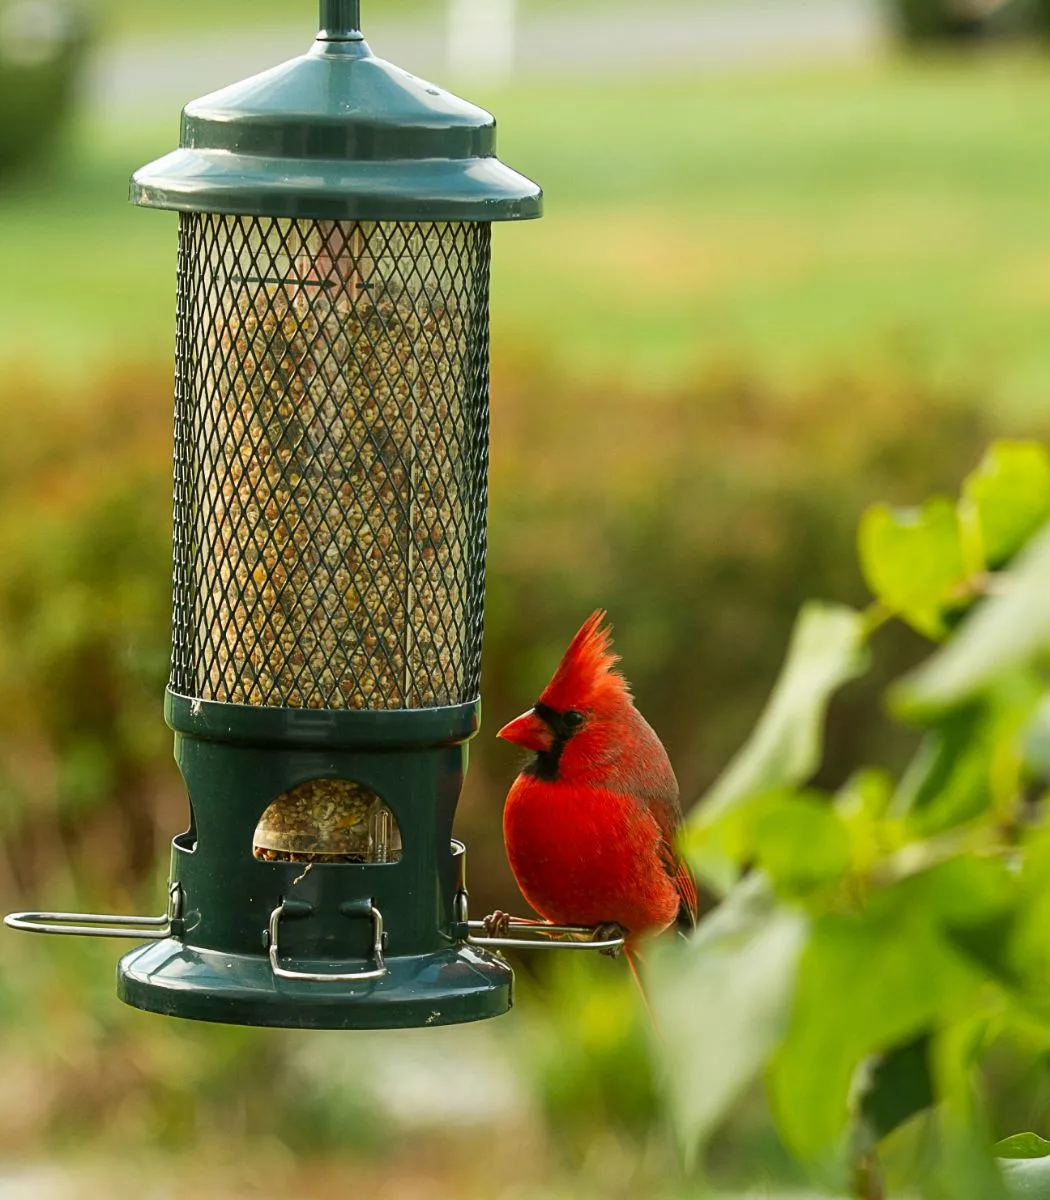 what do cardinals symbolize